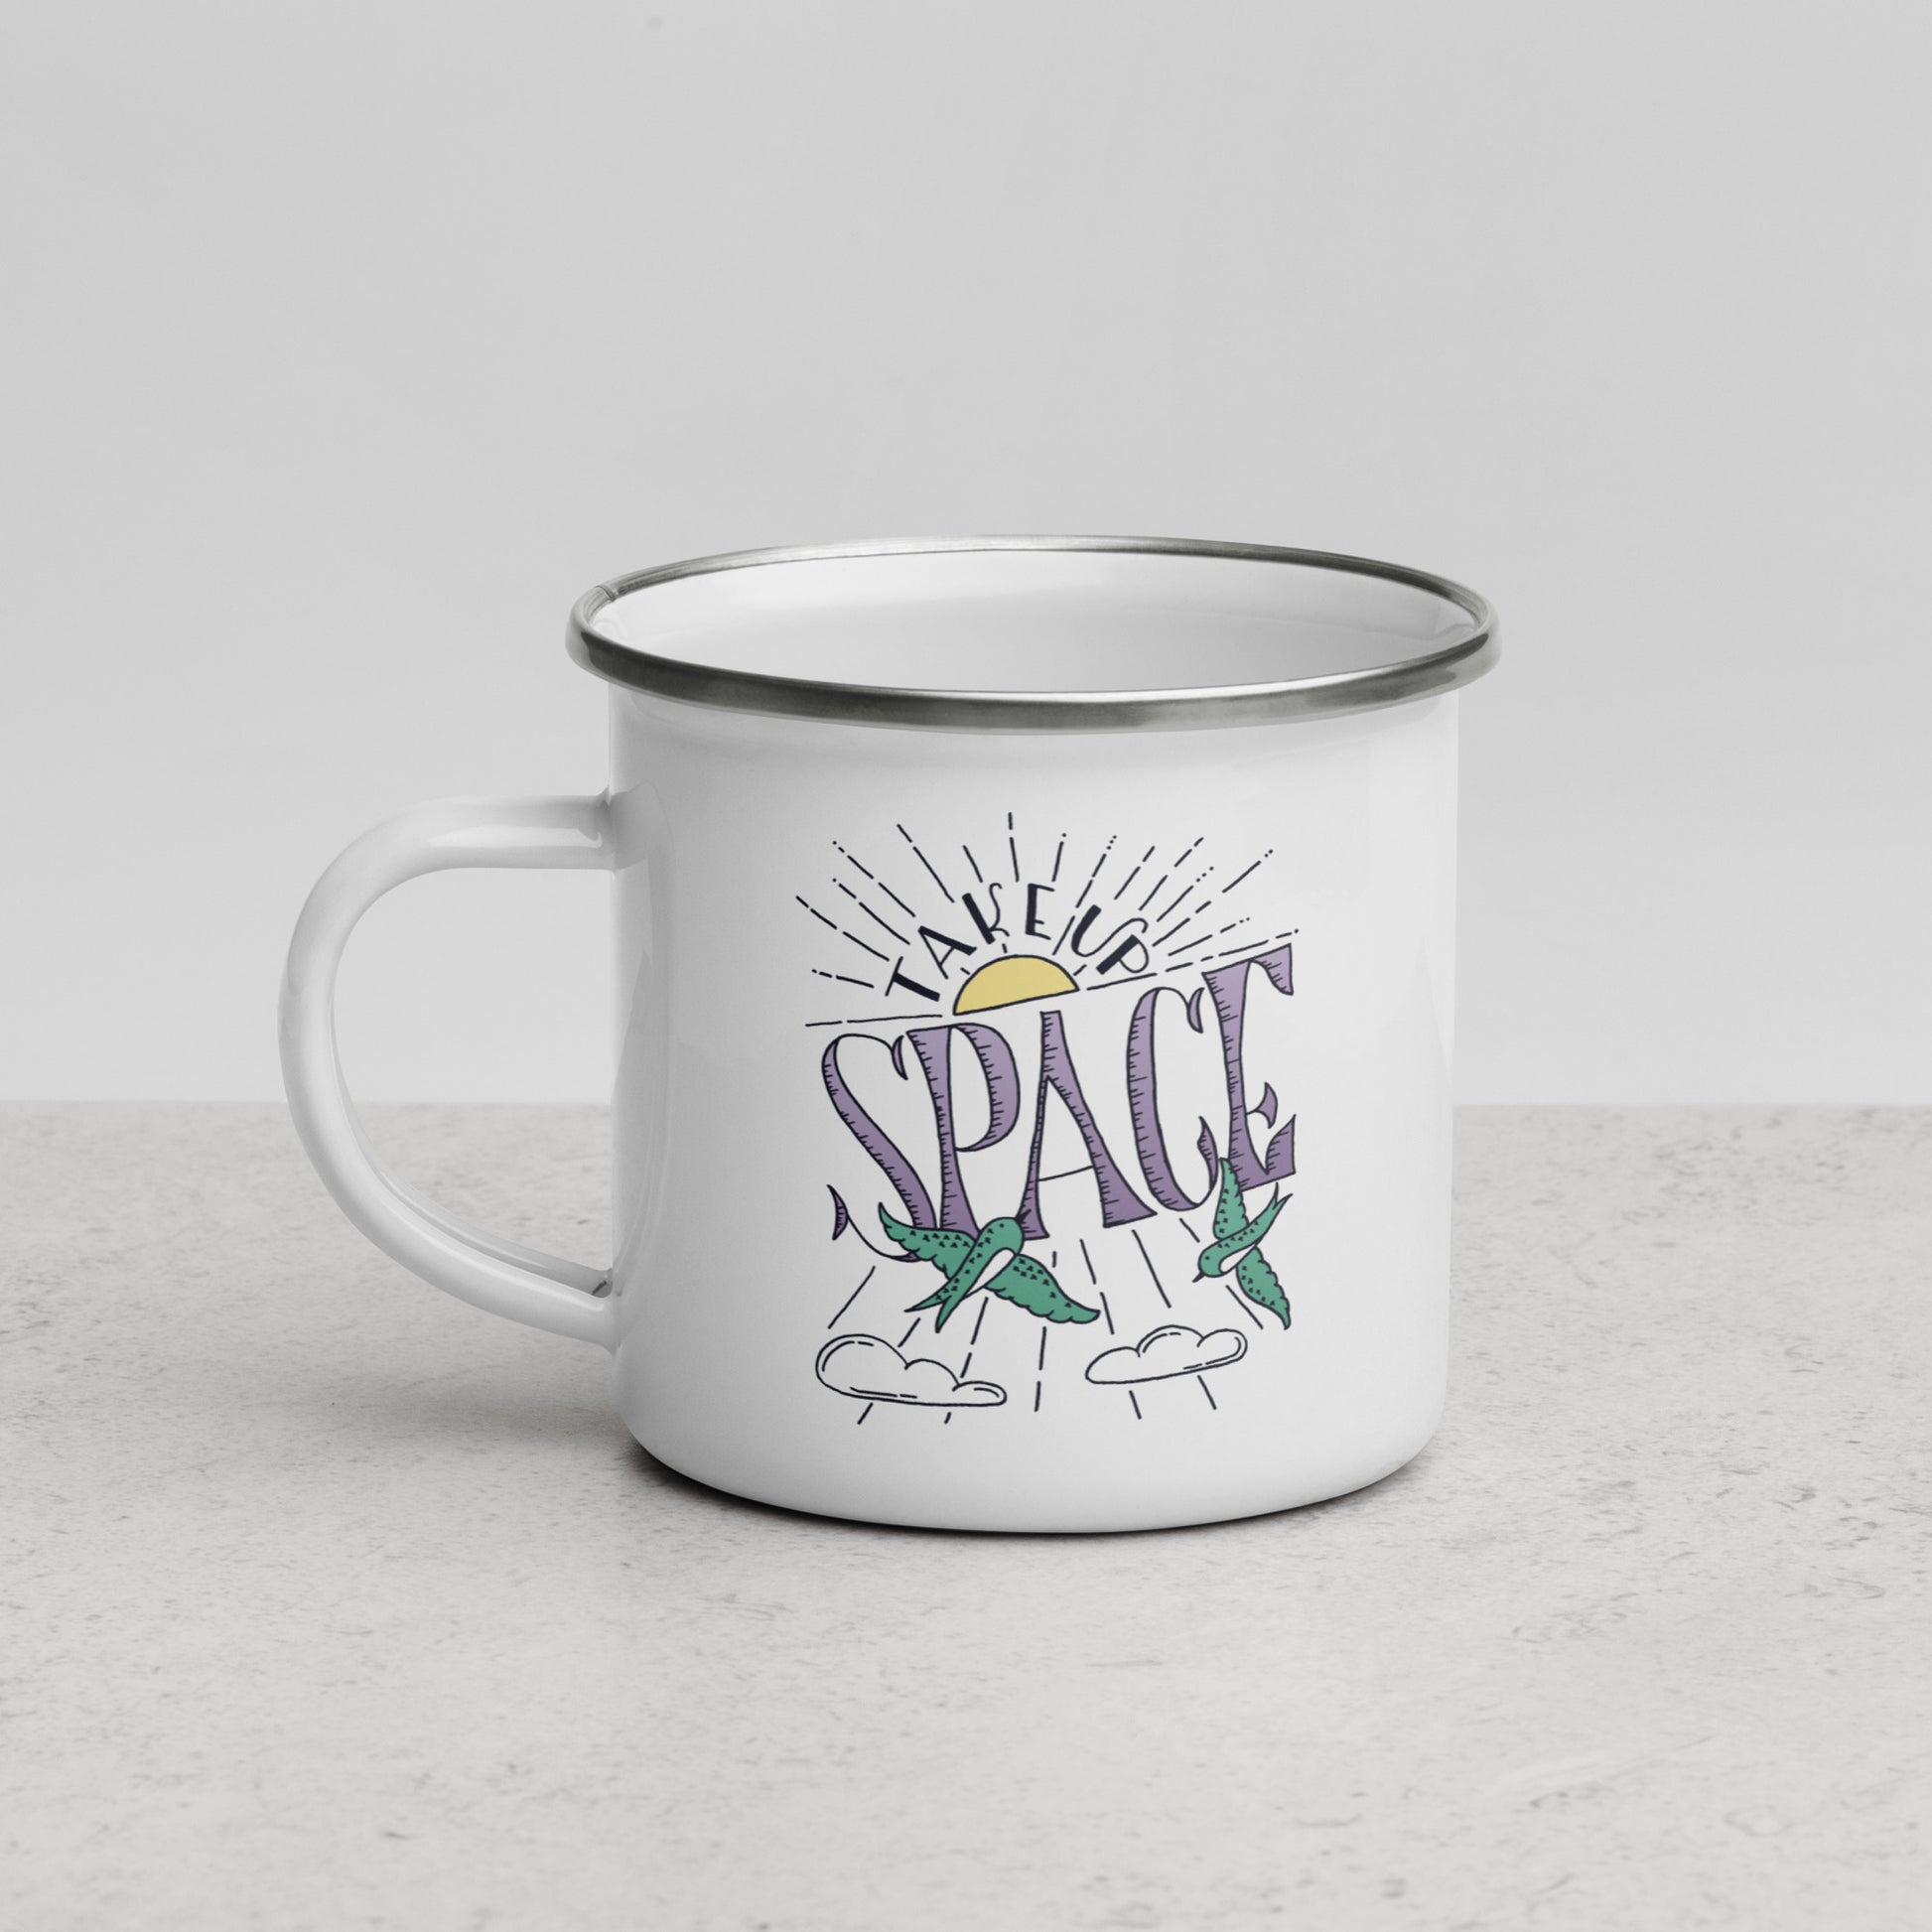 Take Up Space | Enamel Mug.